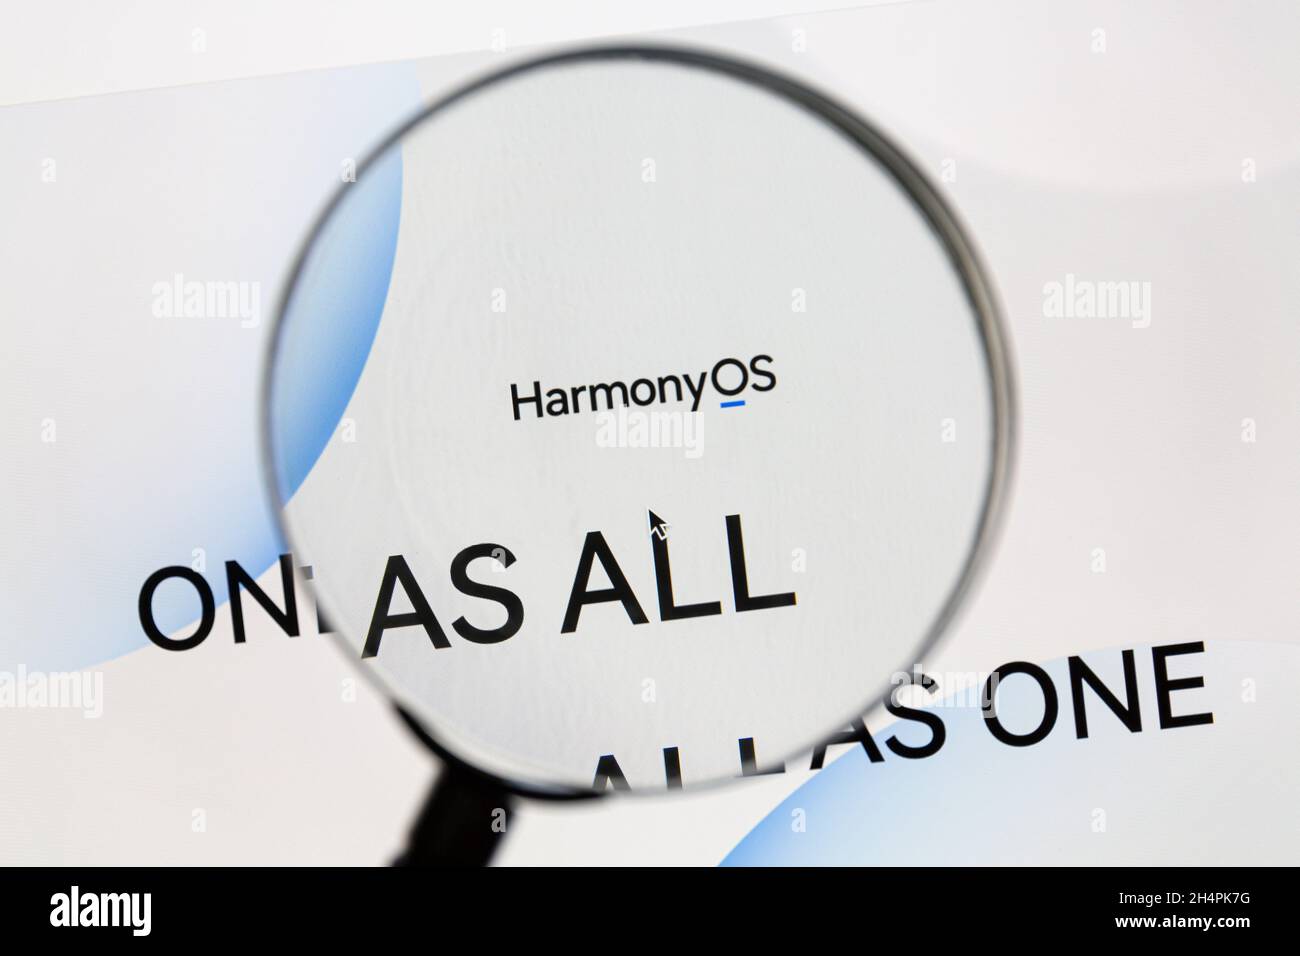 Ostersund, Schweden - 19. Juni 2021: Harmony OS Website. Harmony OS ist ein von Huawei entwickeltes Betriebssystem, das auf mehreren Geräten ausgeführt werden kann. Stockfoto